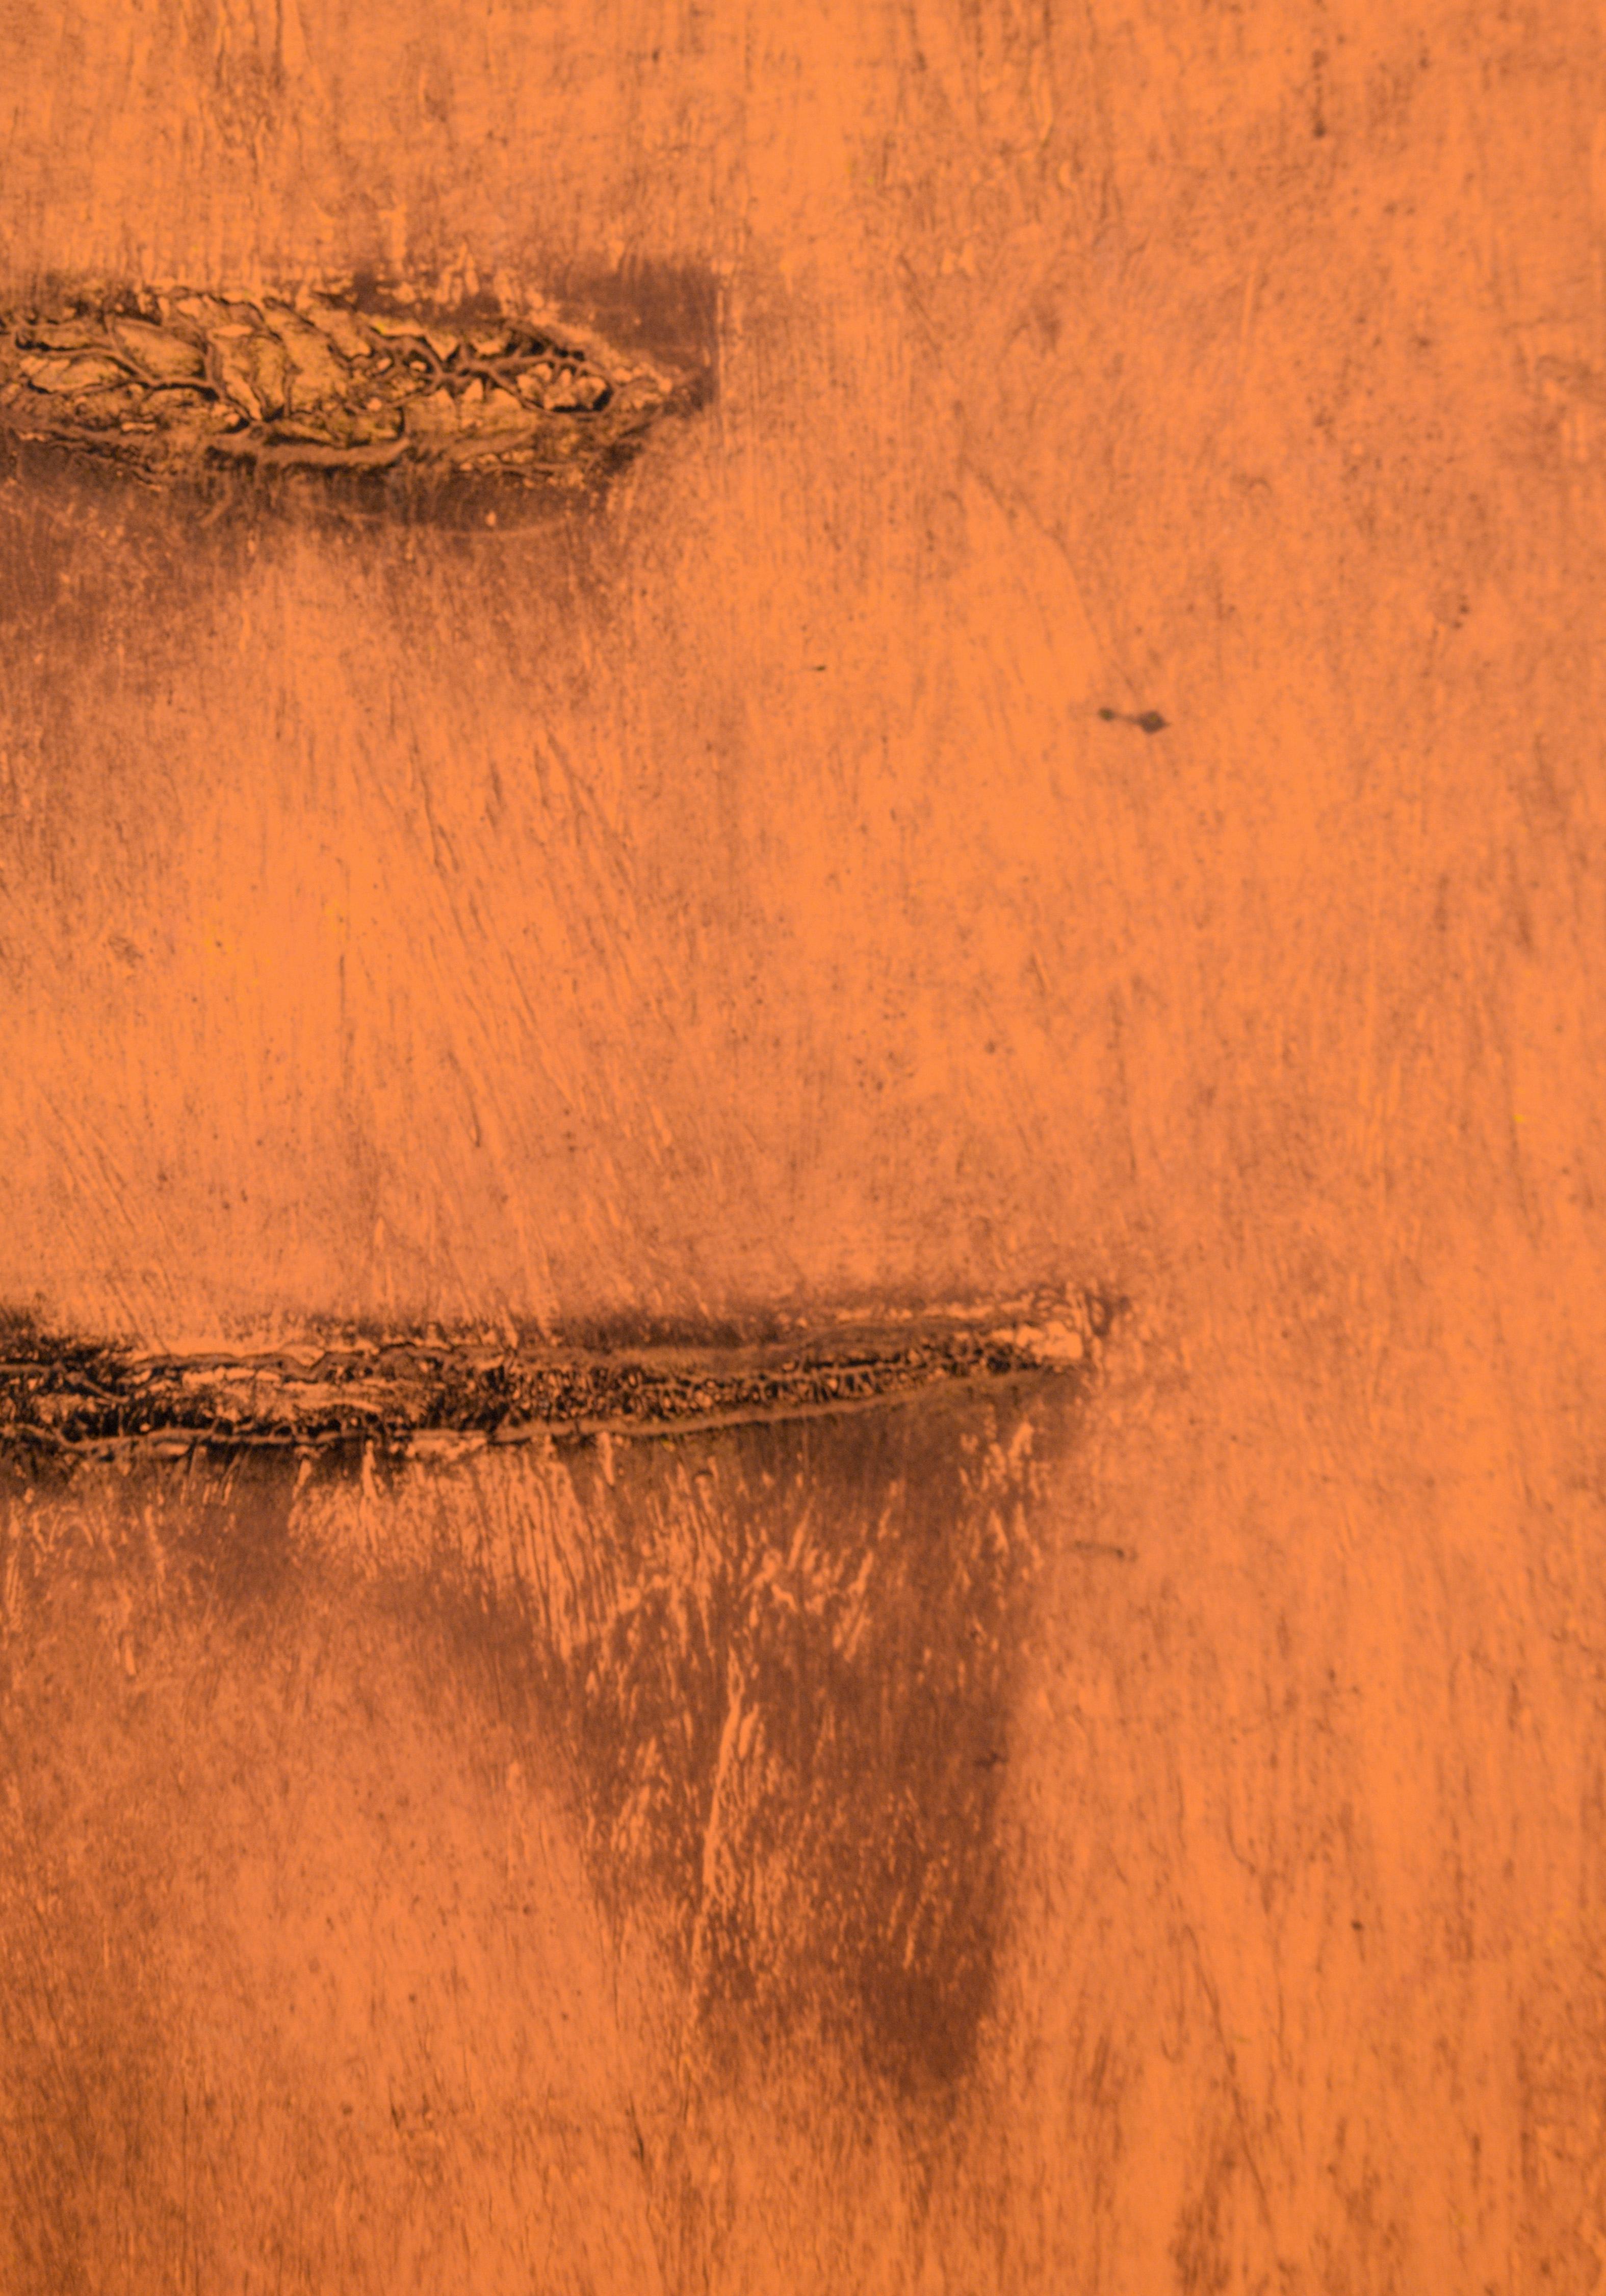 Orange Deadpan – Monodruck EV auf Papier (Abstrakter Expressionismus), Print, von Heather Speck